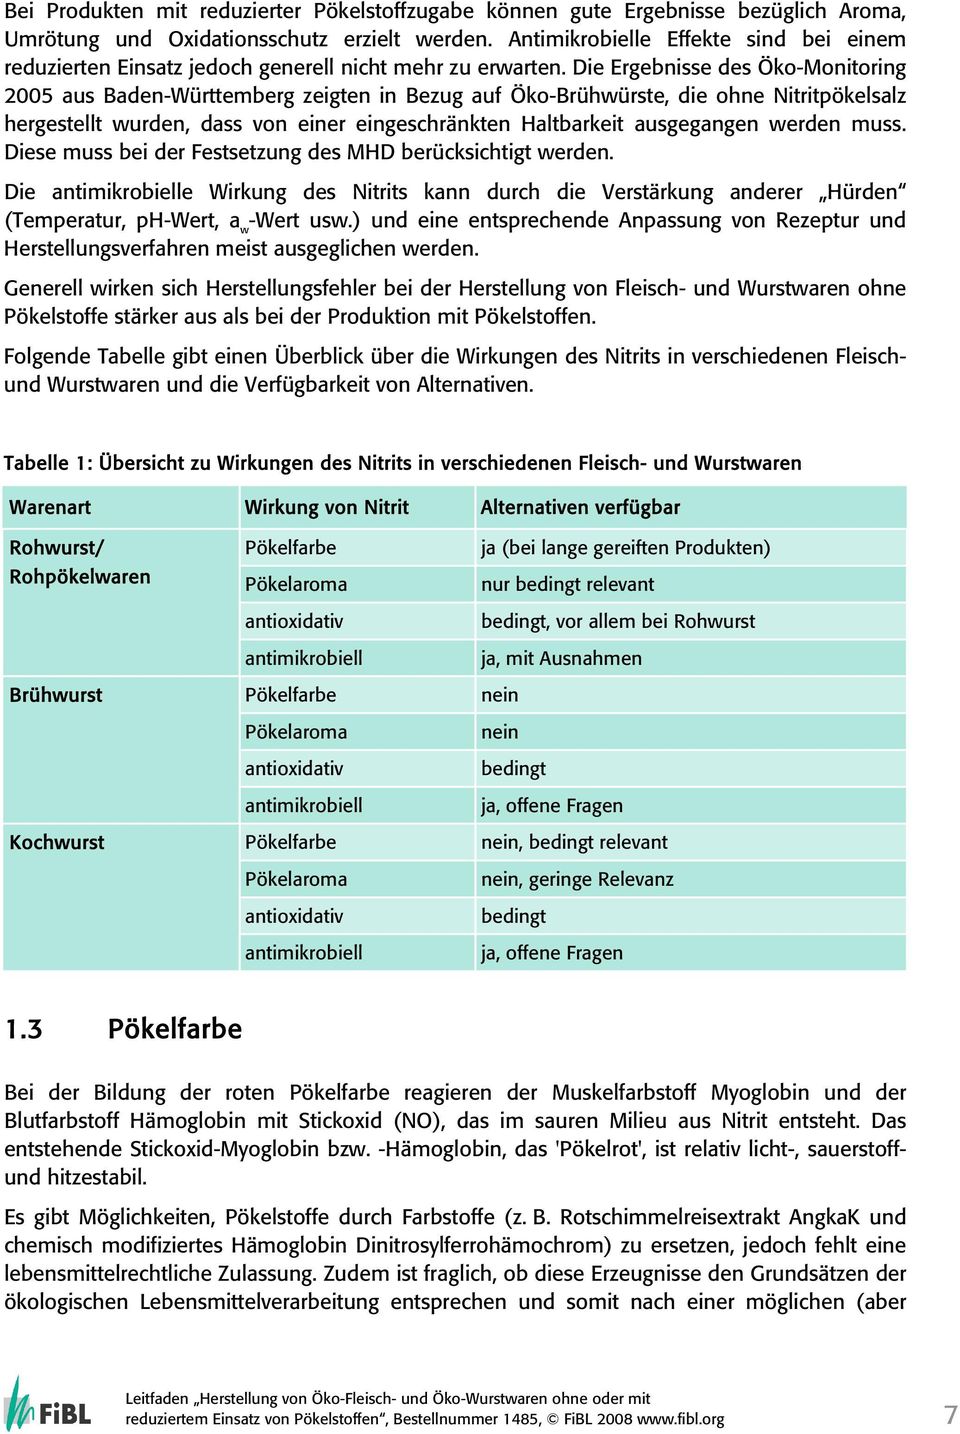 Die Ergebnisse des Öko-Monitoring 2005 aus Baden-Württemberg zeigten in Bezug auf Öko-Brühwürste, die ohne Nitritpökelsalz hergestellt wurden, dass von einer eingeschränkten Haltbarkeit ausgegangen